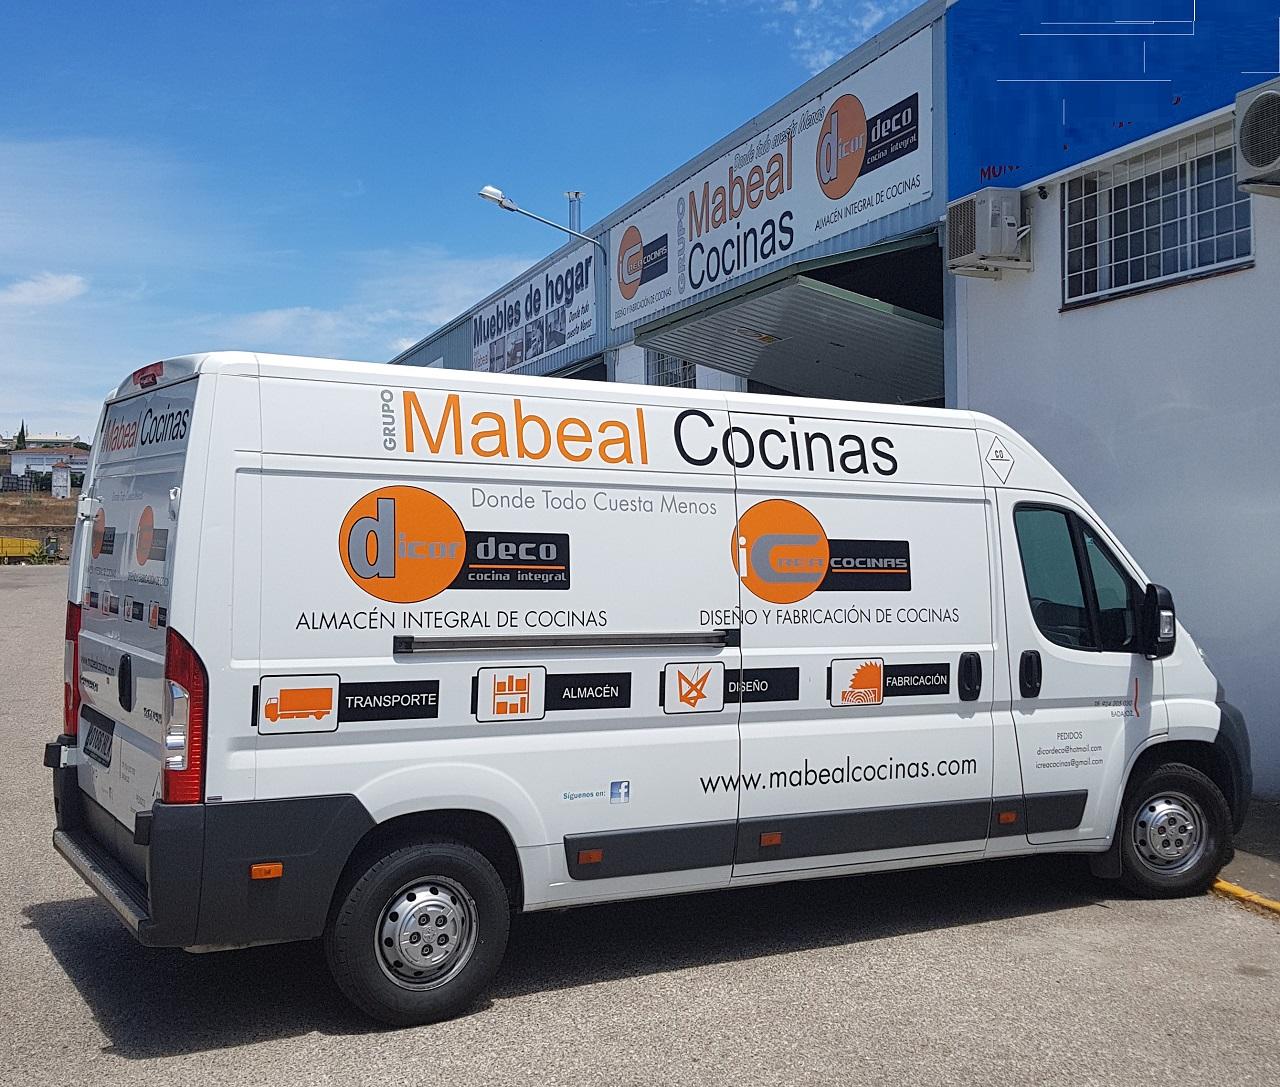 Mabeal Cocinas Badajoz